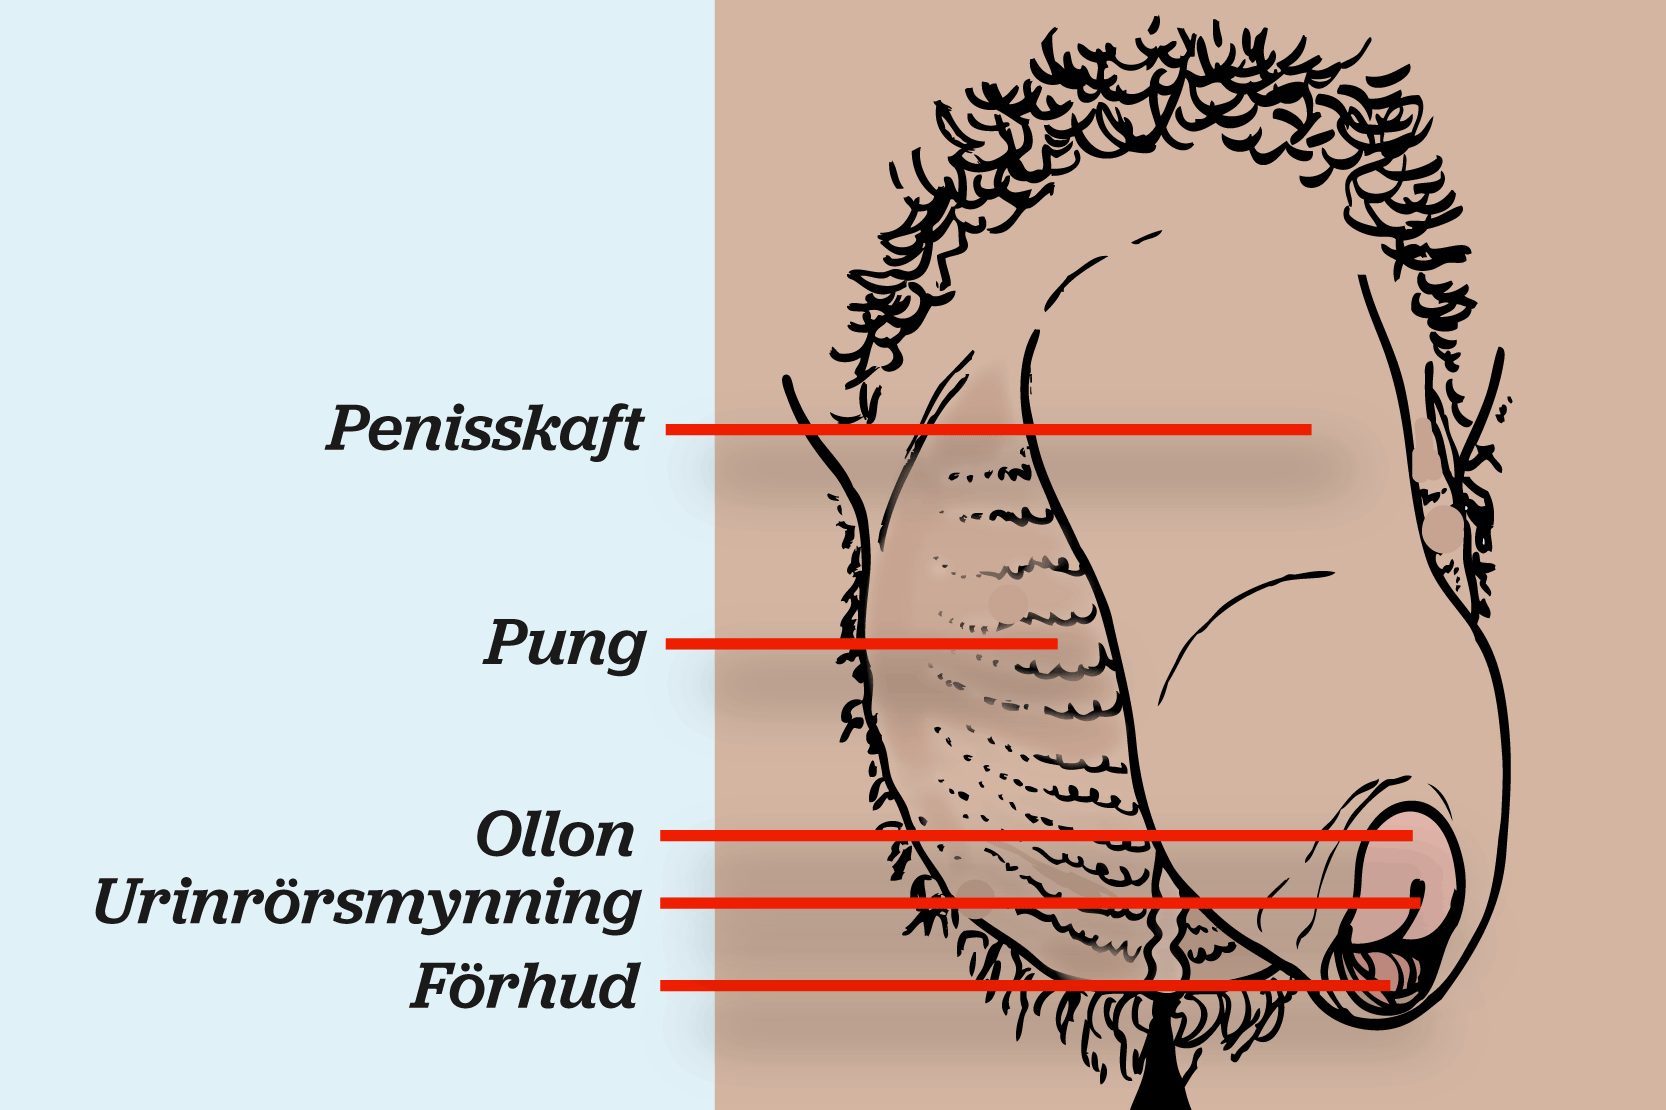 Penisens olika delar namnges.